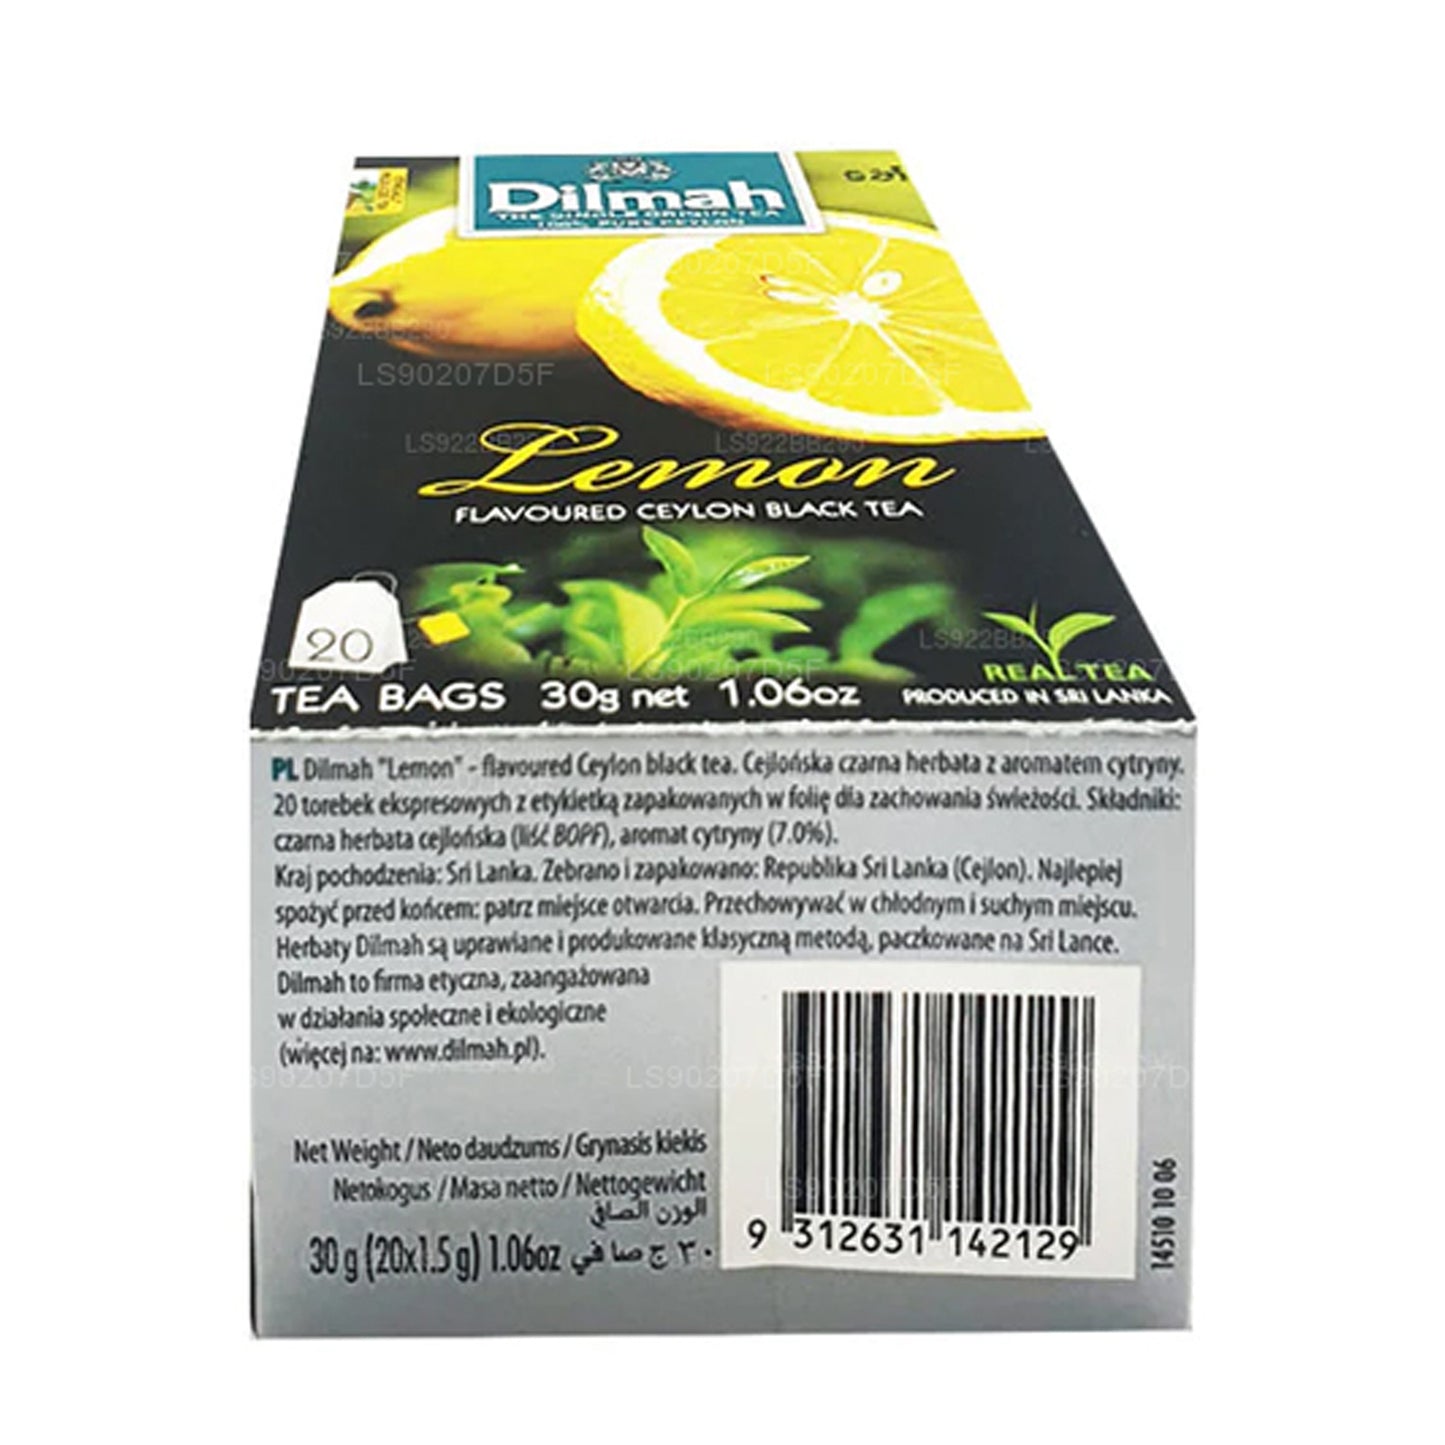 Té Dilmah con sabor a limón (30 g) 20 bolsitas de té